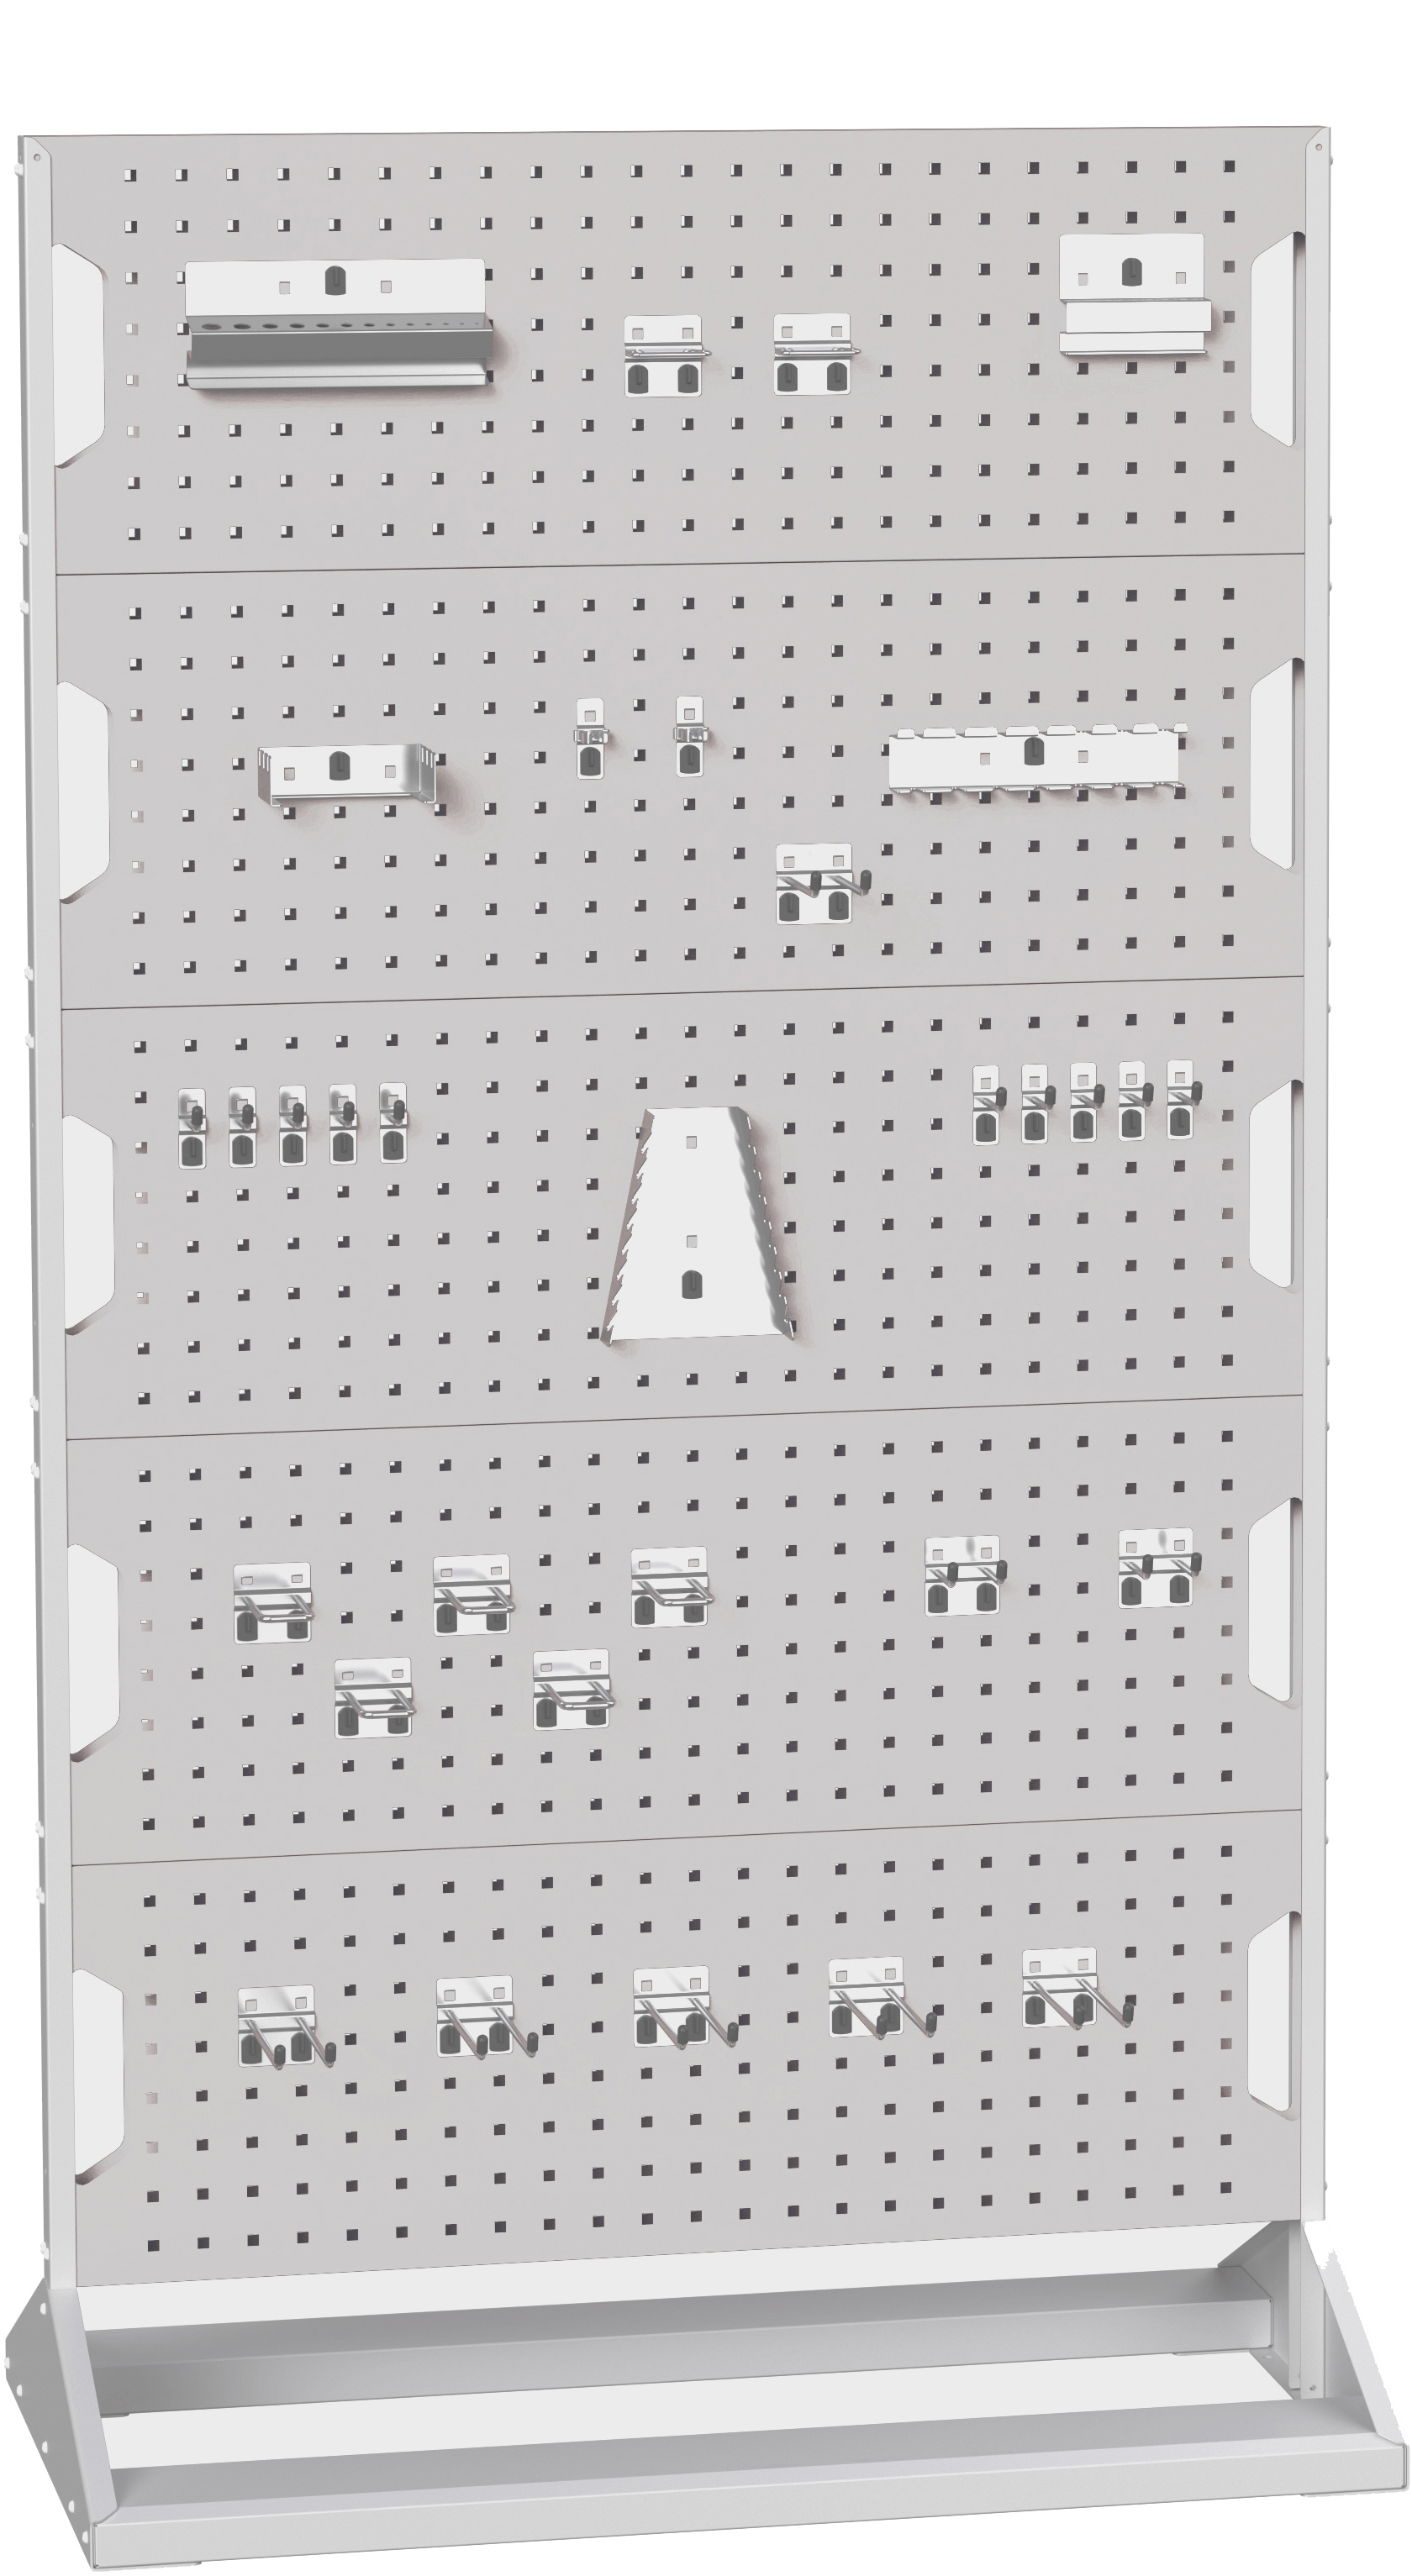 Bott Perfo Panel Rack (Double Sided) - 16917202.16V